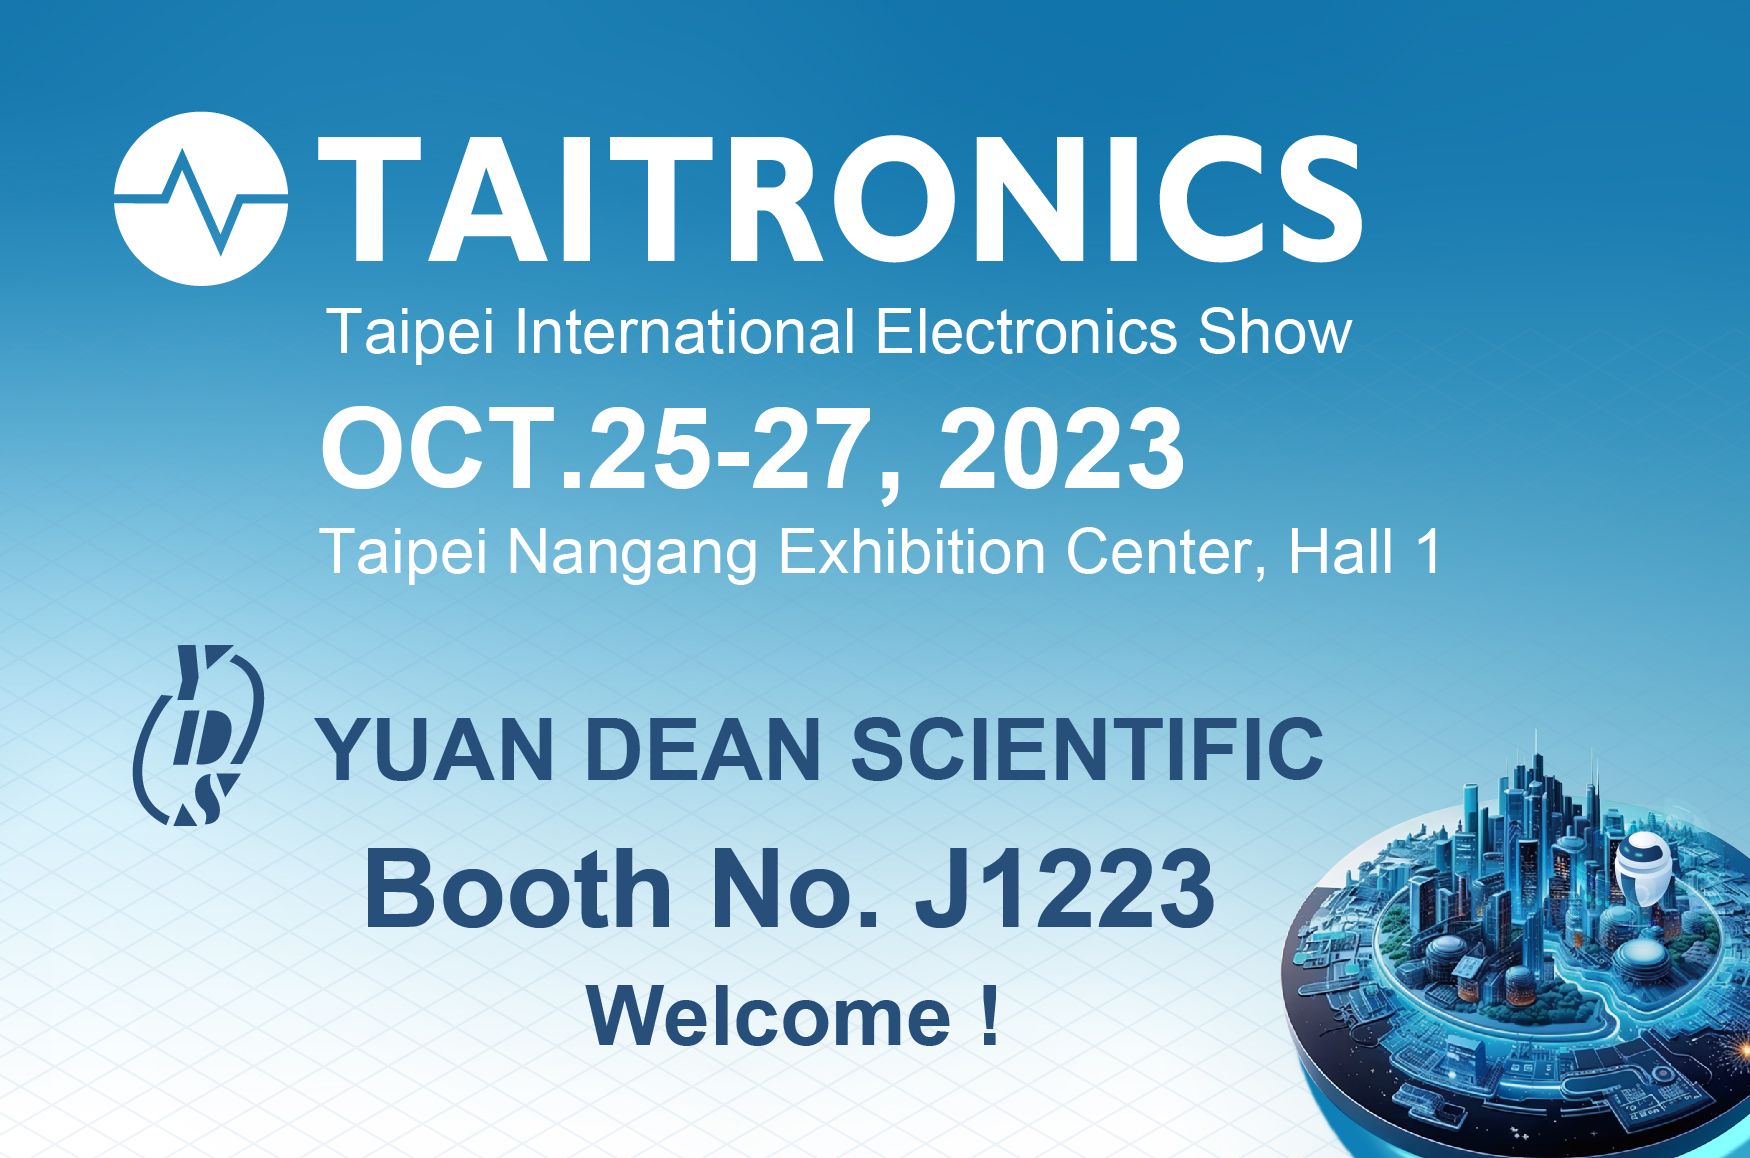 2023 TAITRONICS - zapraszamy do odwiedzenia stoiska YUAN DEAN - J1223